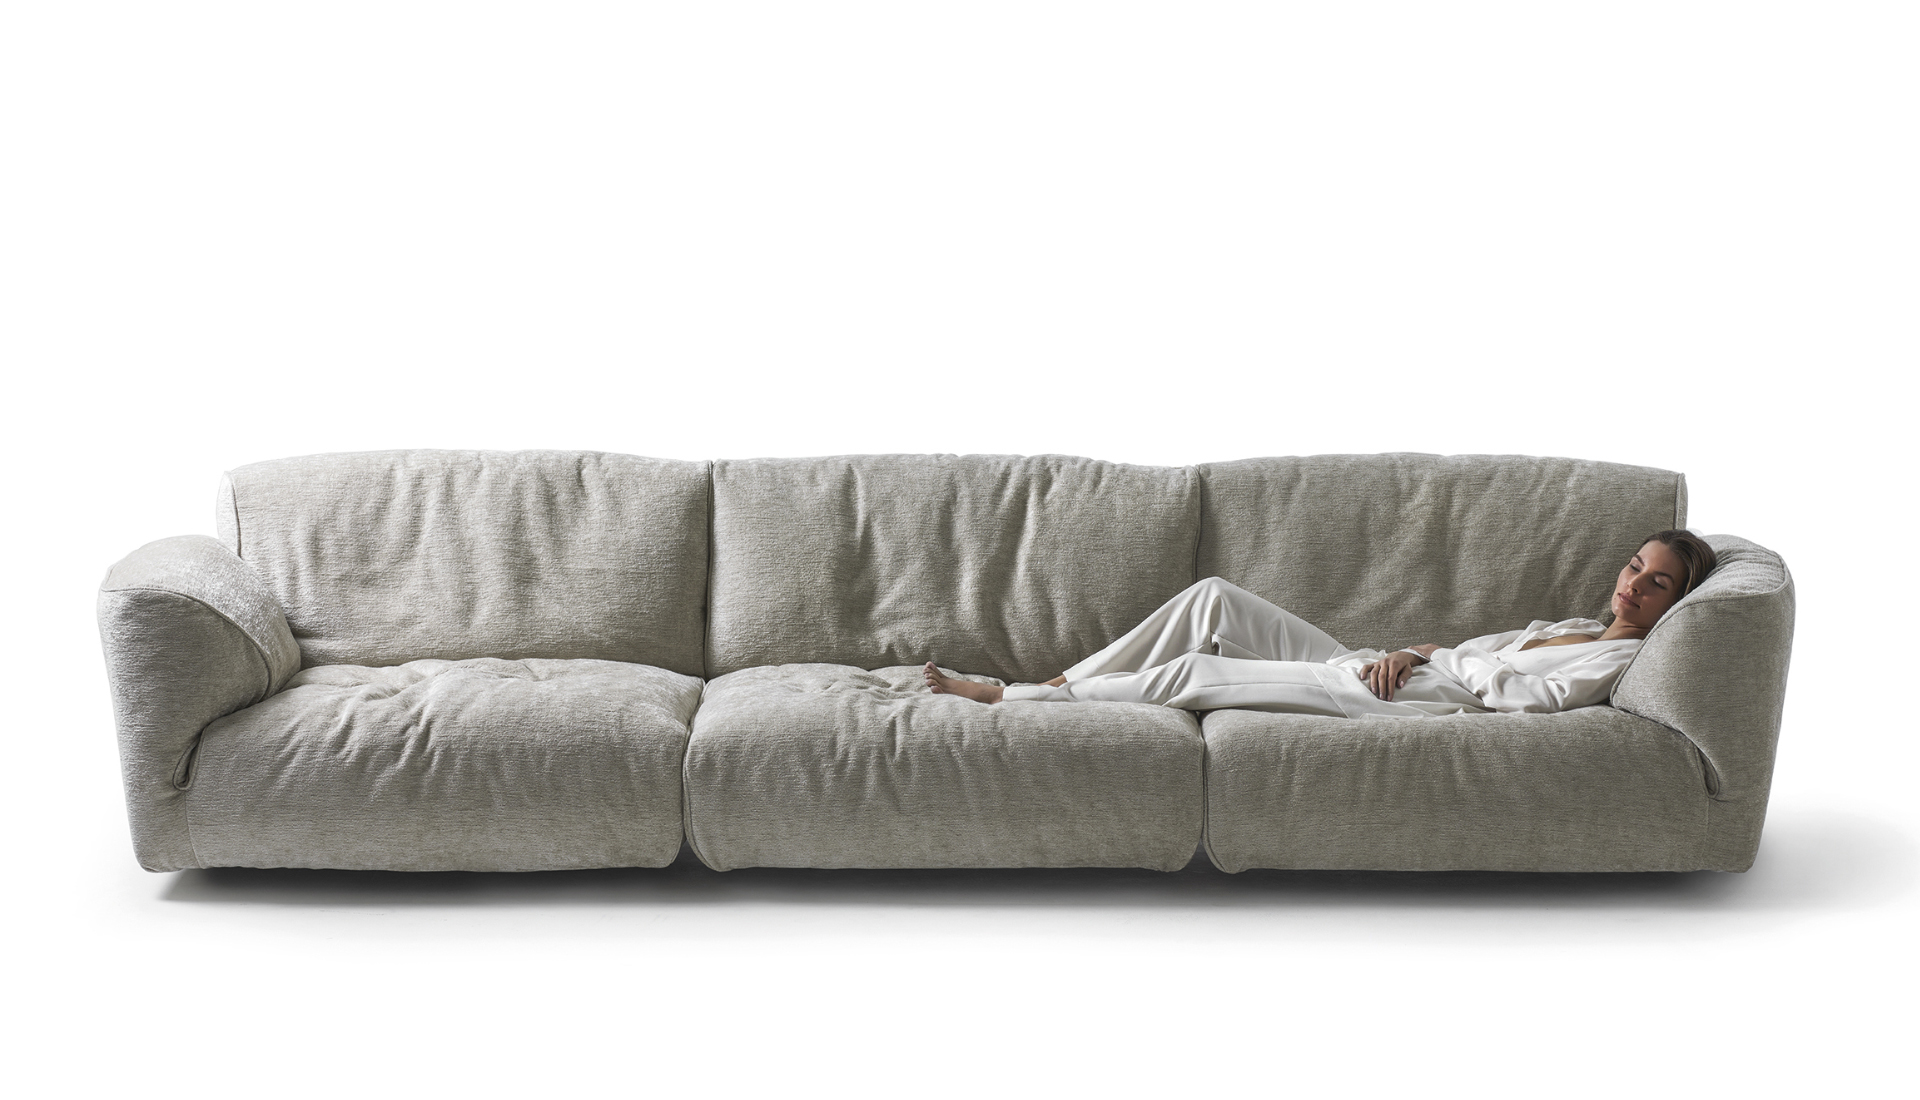 Валерия Сенькина, бюро Dseesion: как выбрать идеальный диван